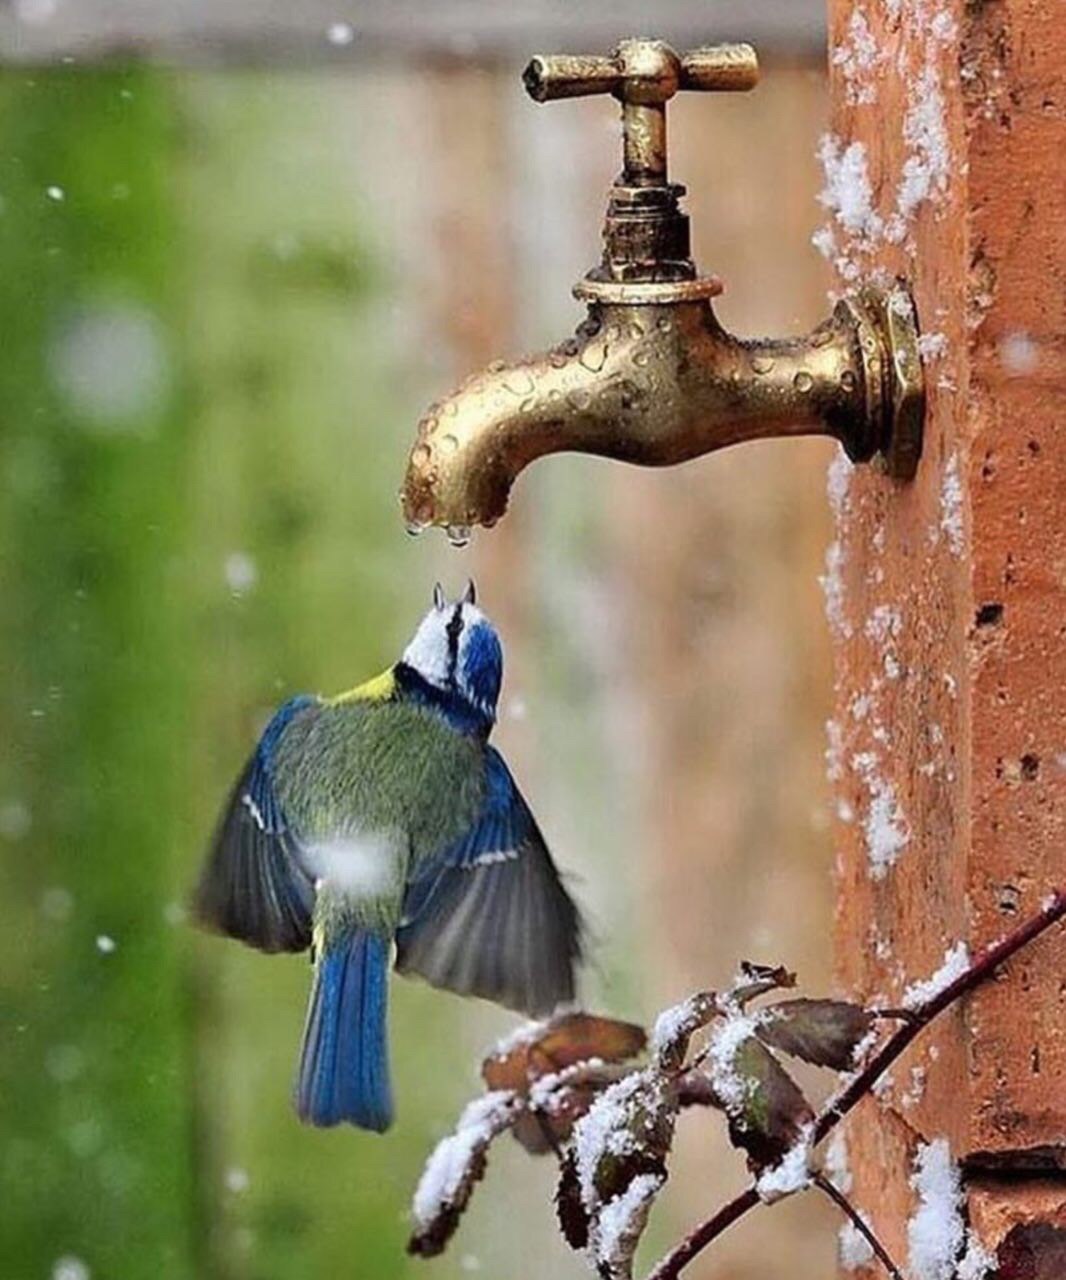 تصویر دیدنی از آب خوردن پرنده از شیر آب+عکس